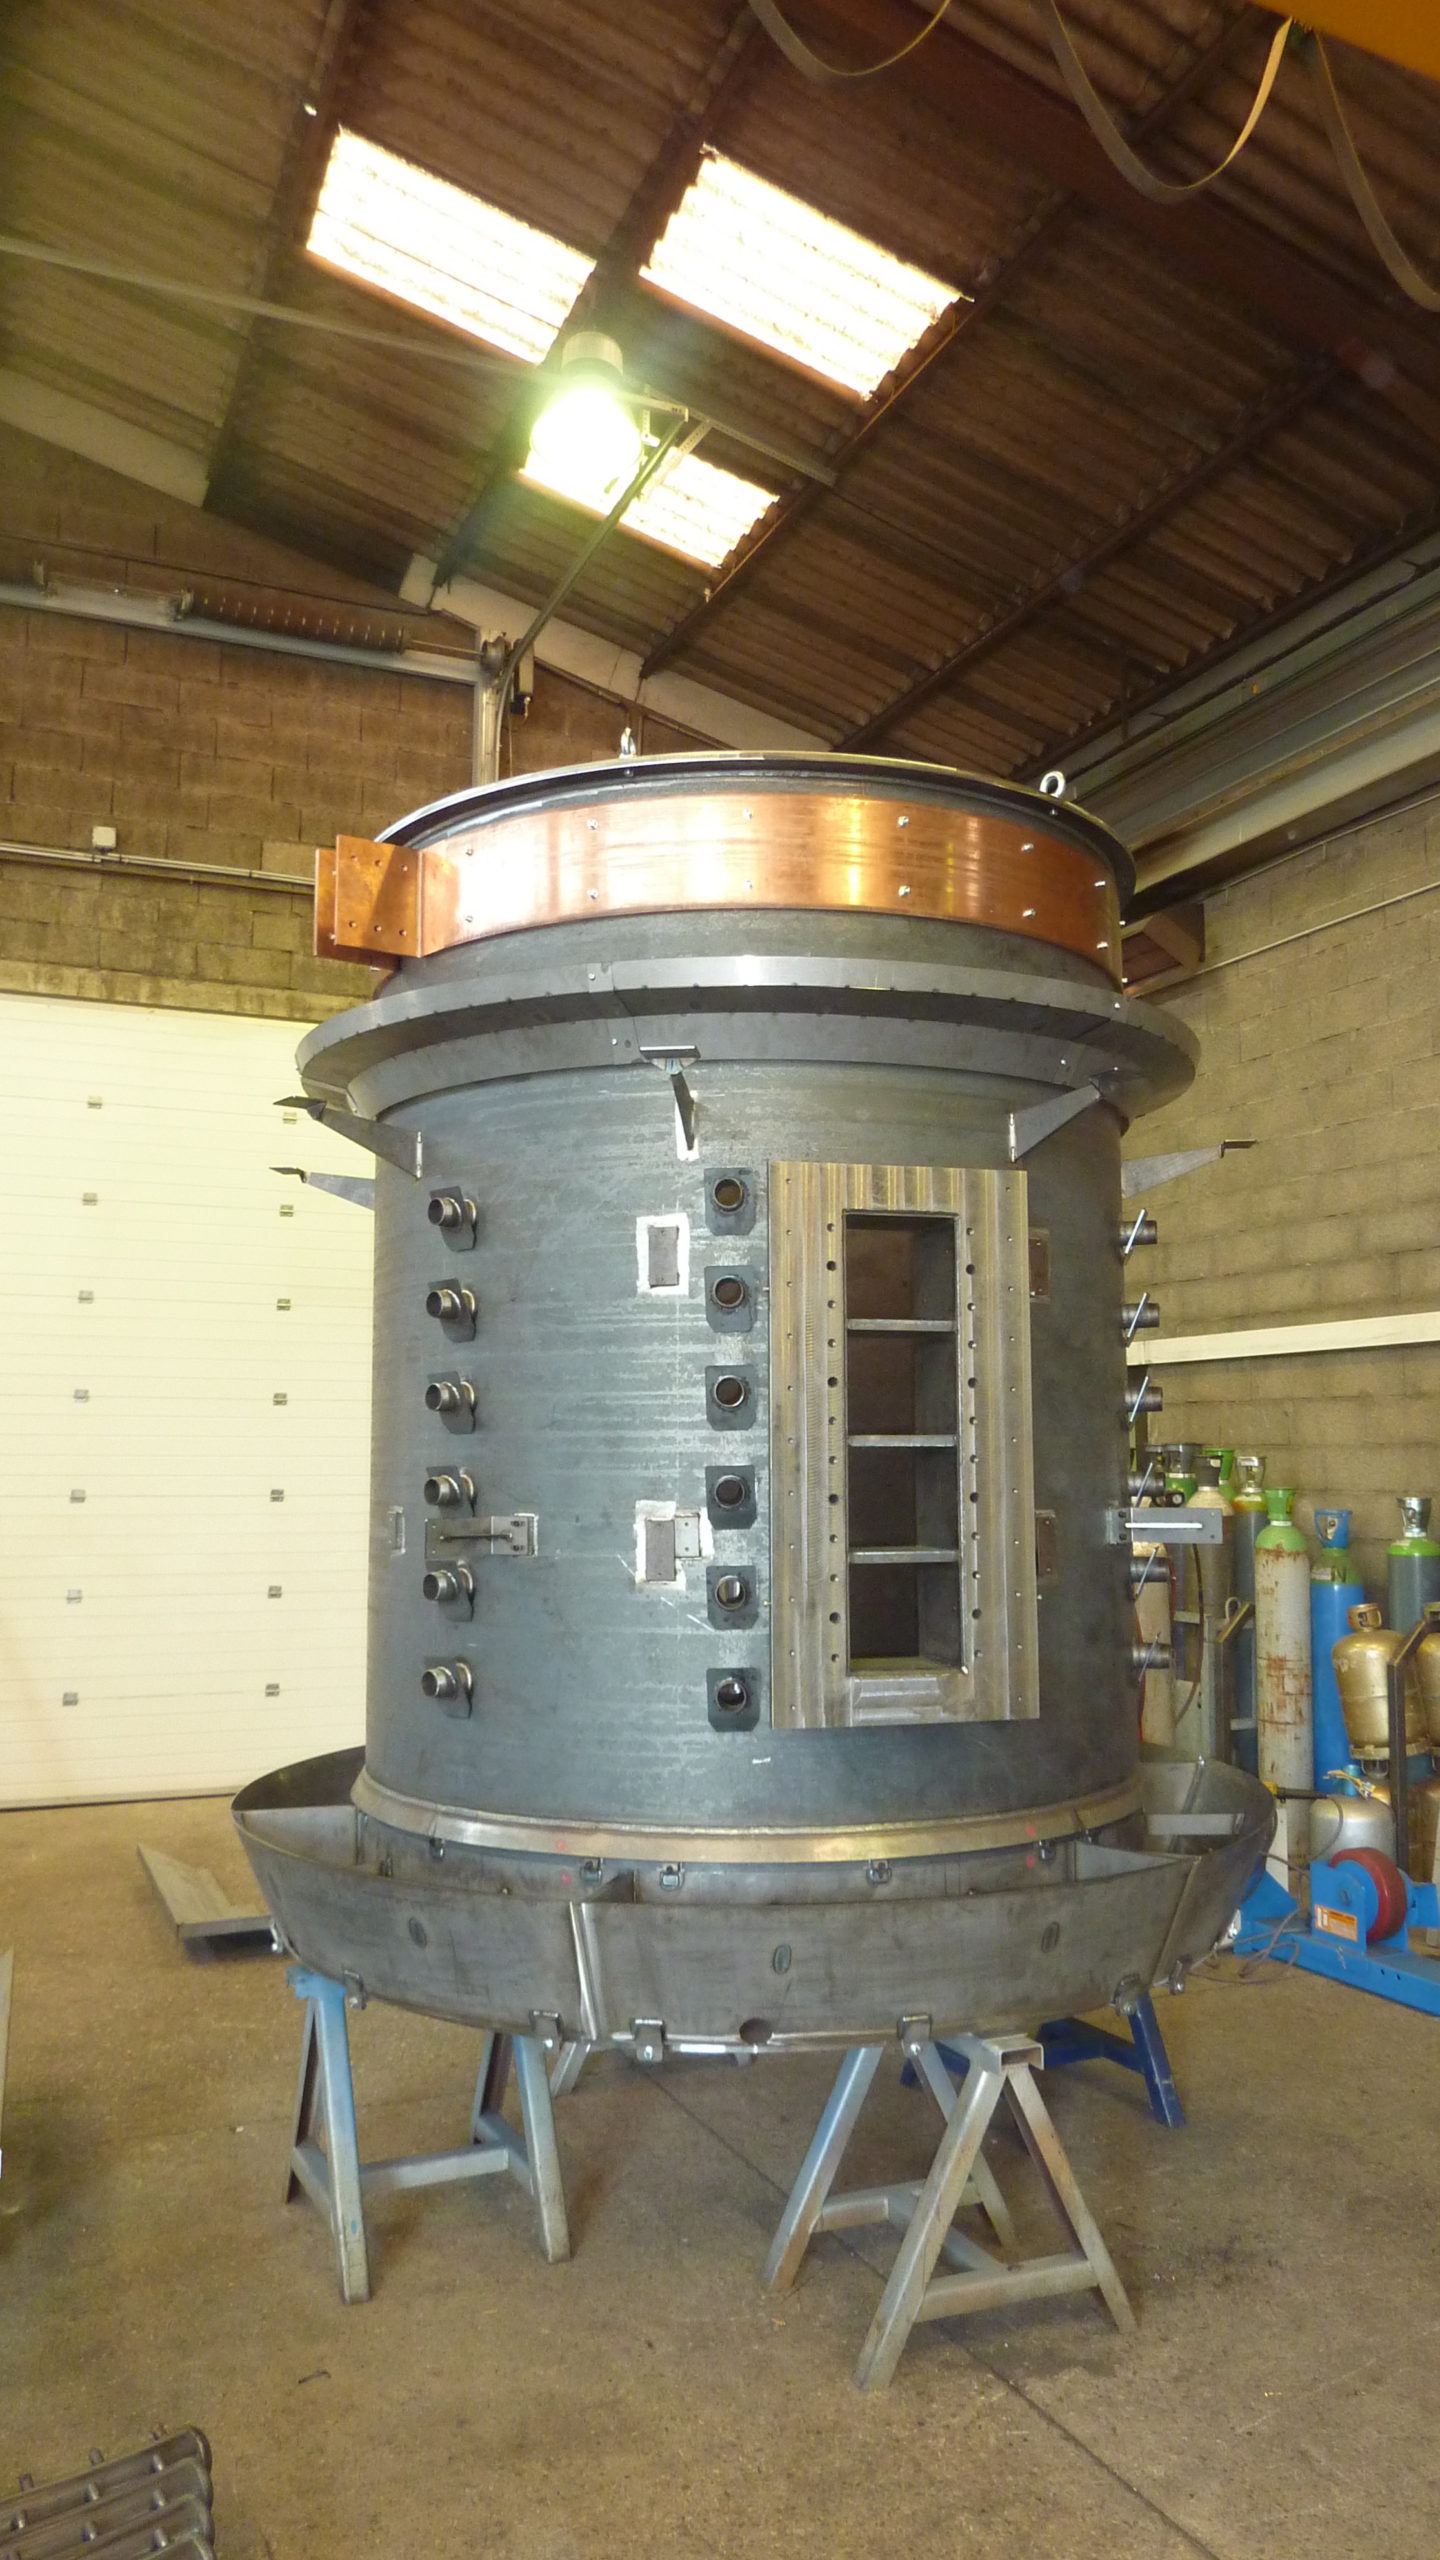 Image d'un four de fusion minerais, produit dans les ateliers de la chaudronnerie Marmonier en Rhône-Alpes, France